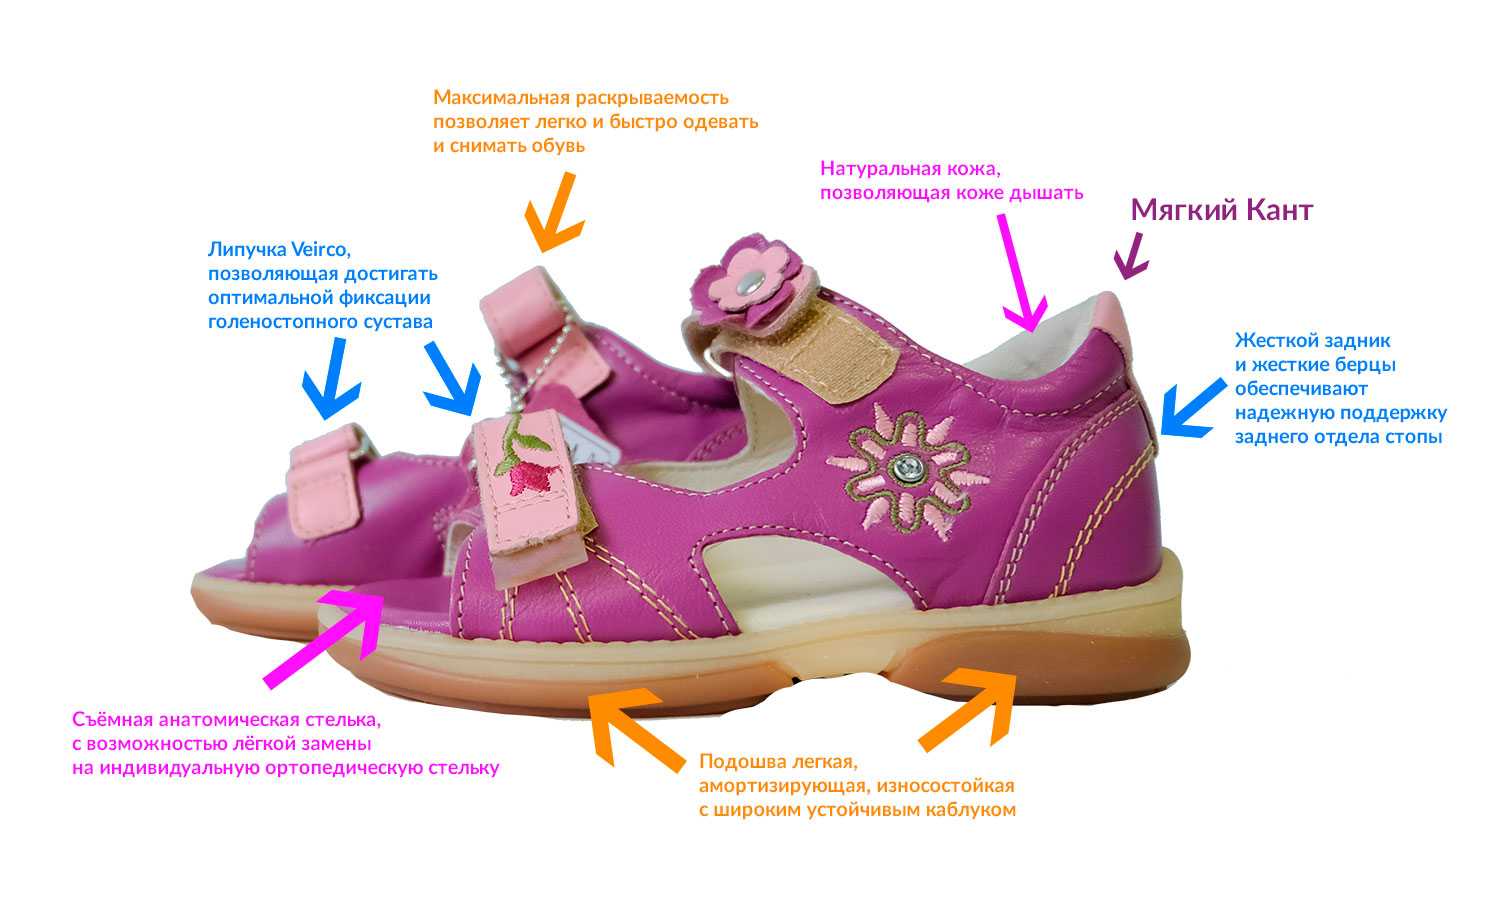 Как правильно подобрать обувь ребенку. Правильная обувь для детей. Детская ортопедическая обувь. Правильная ортопедическая обувь. Ортопедические обув для детей.